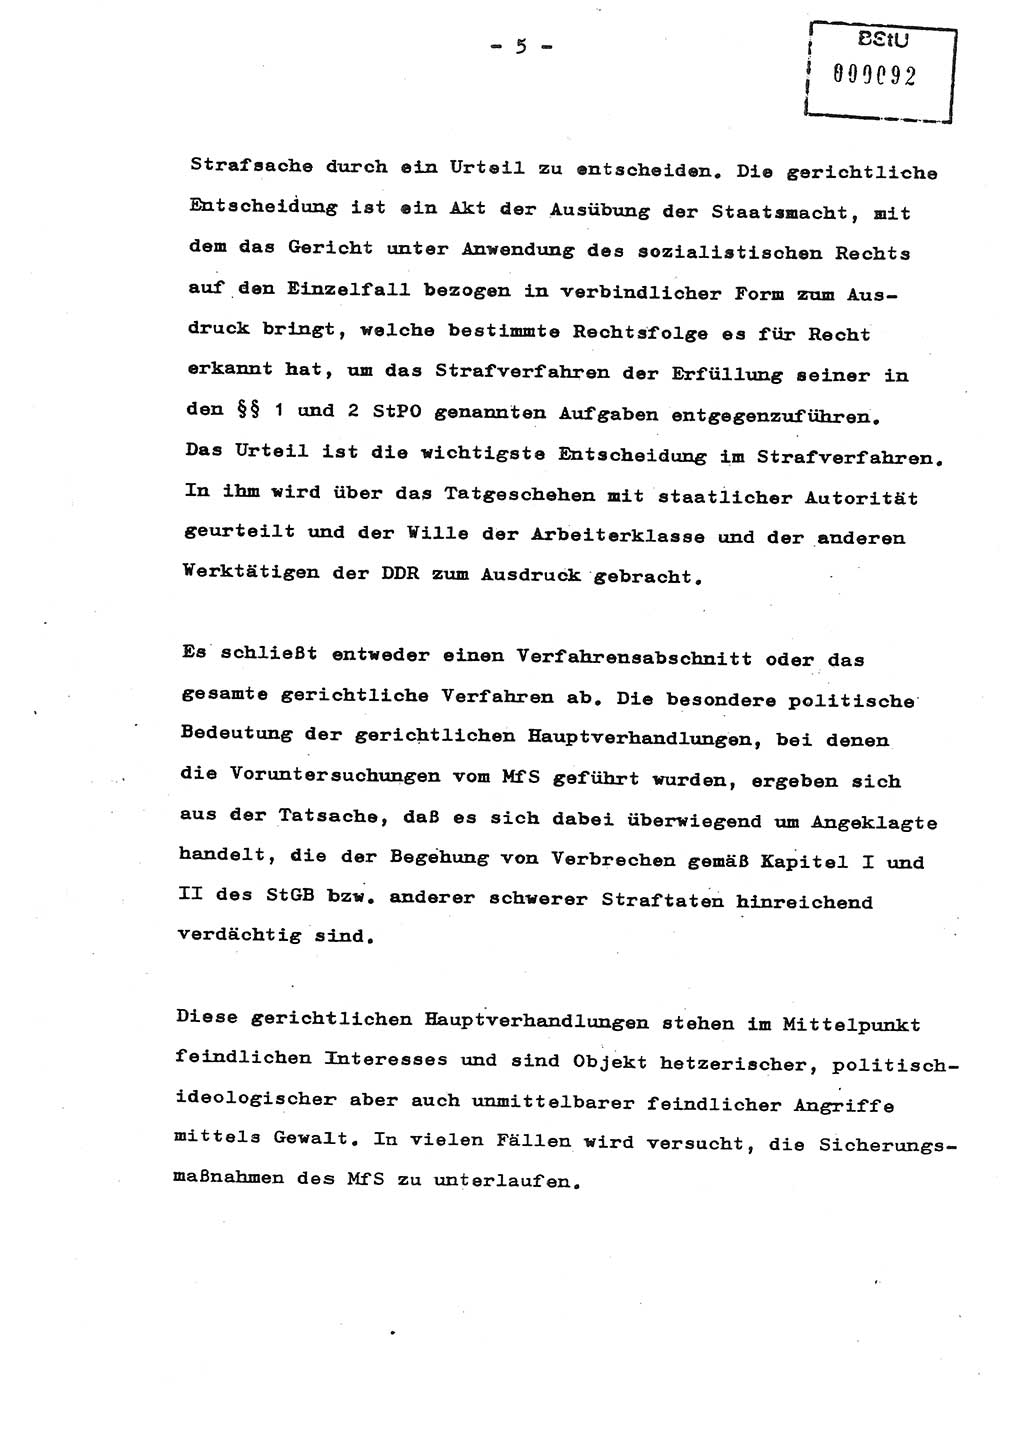 Schulungsmaterial Exemplar-Nr.: 8, Ministerium für Staatssicherheit [Deutsche Demokratische Republik (DDR)], Abteilung (Abt.) ⅩⅣ, Berlin 1987, Seite 5 (Sch.-Mat. Expl. 8 MfS DDR Abt. ⅩⅣ /87 1987, S. 5)